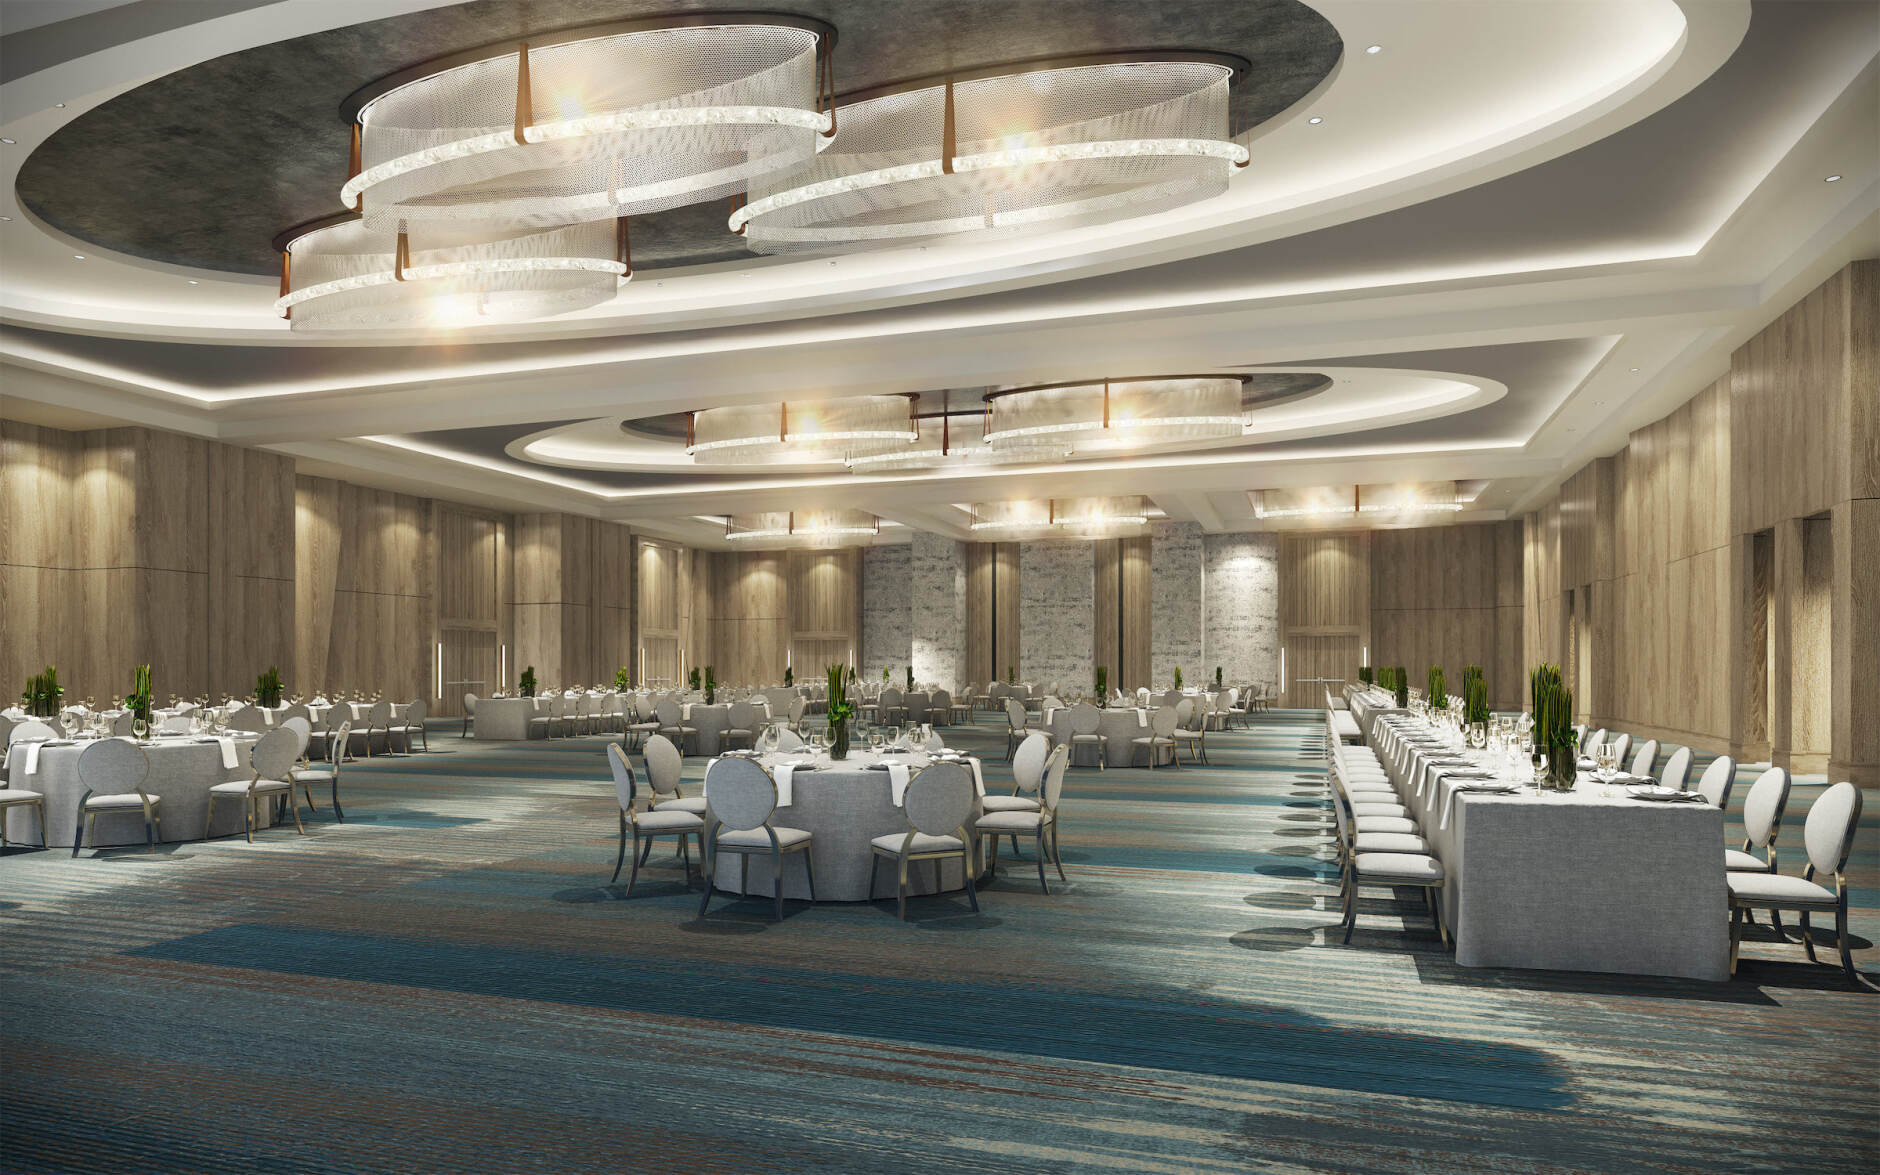 ROH New Hotel Openings: A ballroom at Omni Tempe Hotel at ASU